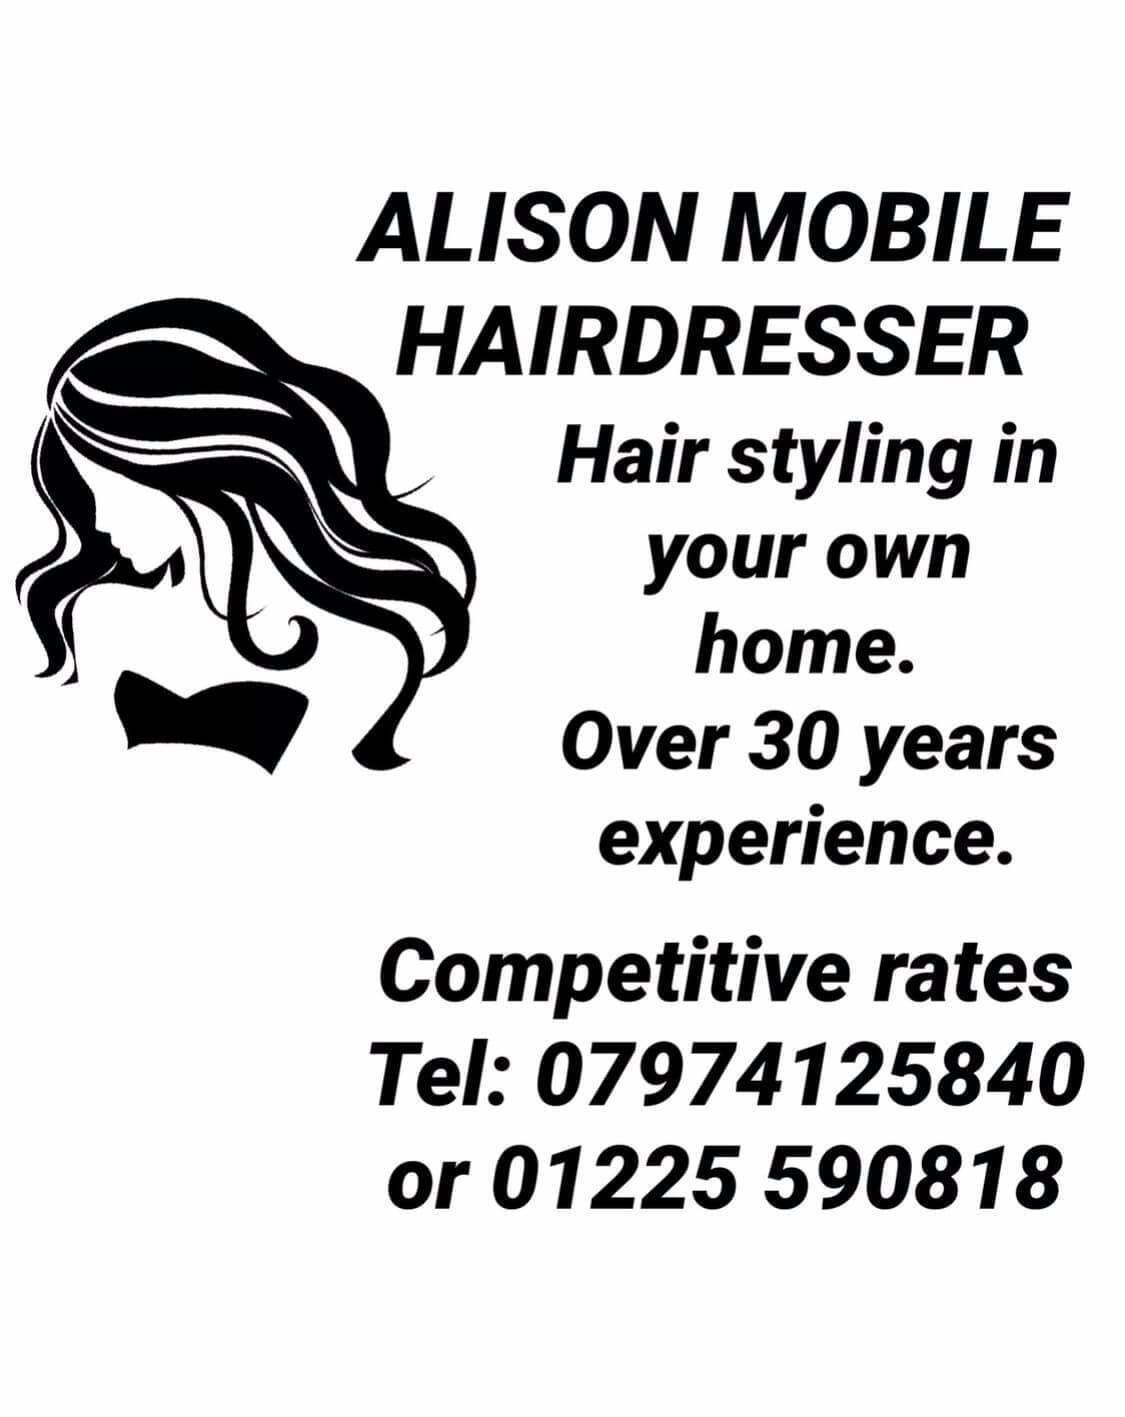 Best Hair Salons in Hilperton, Trowbridge